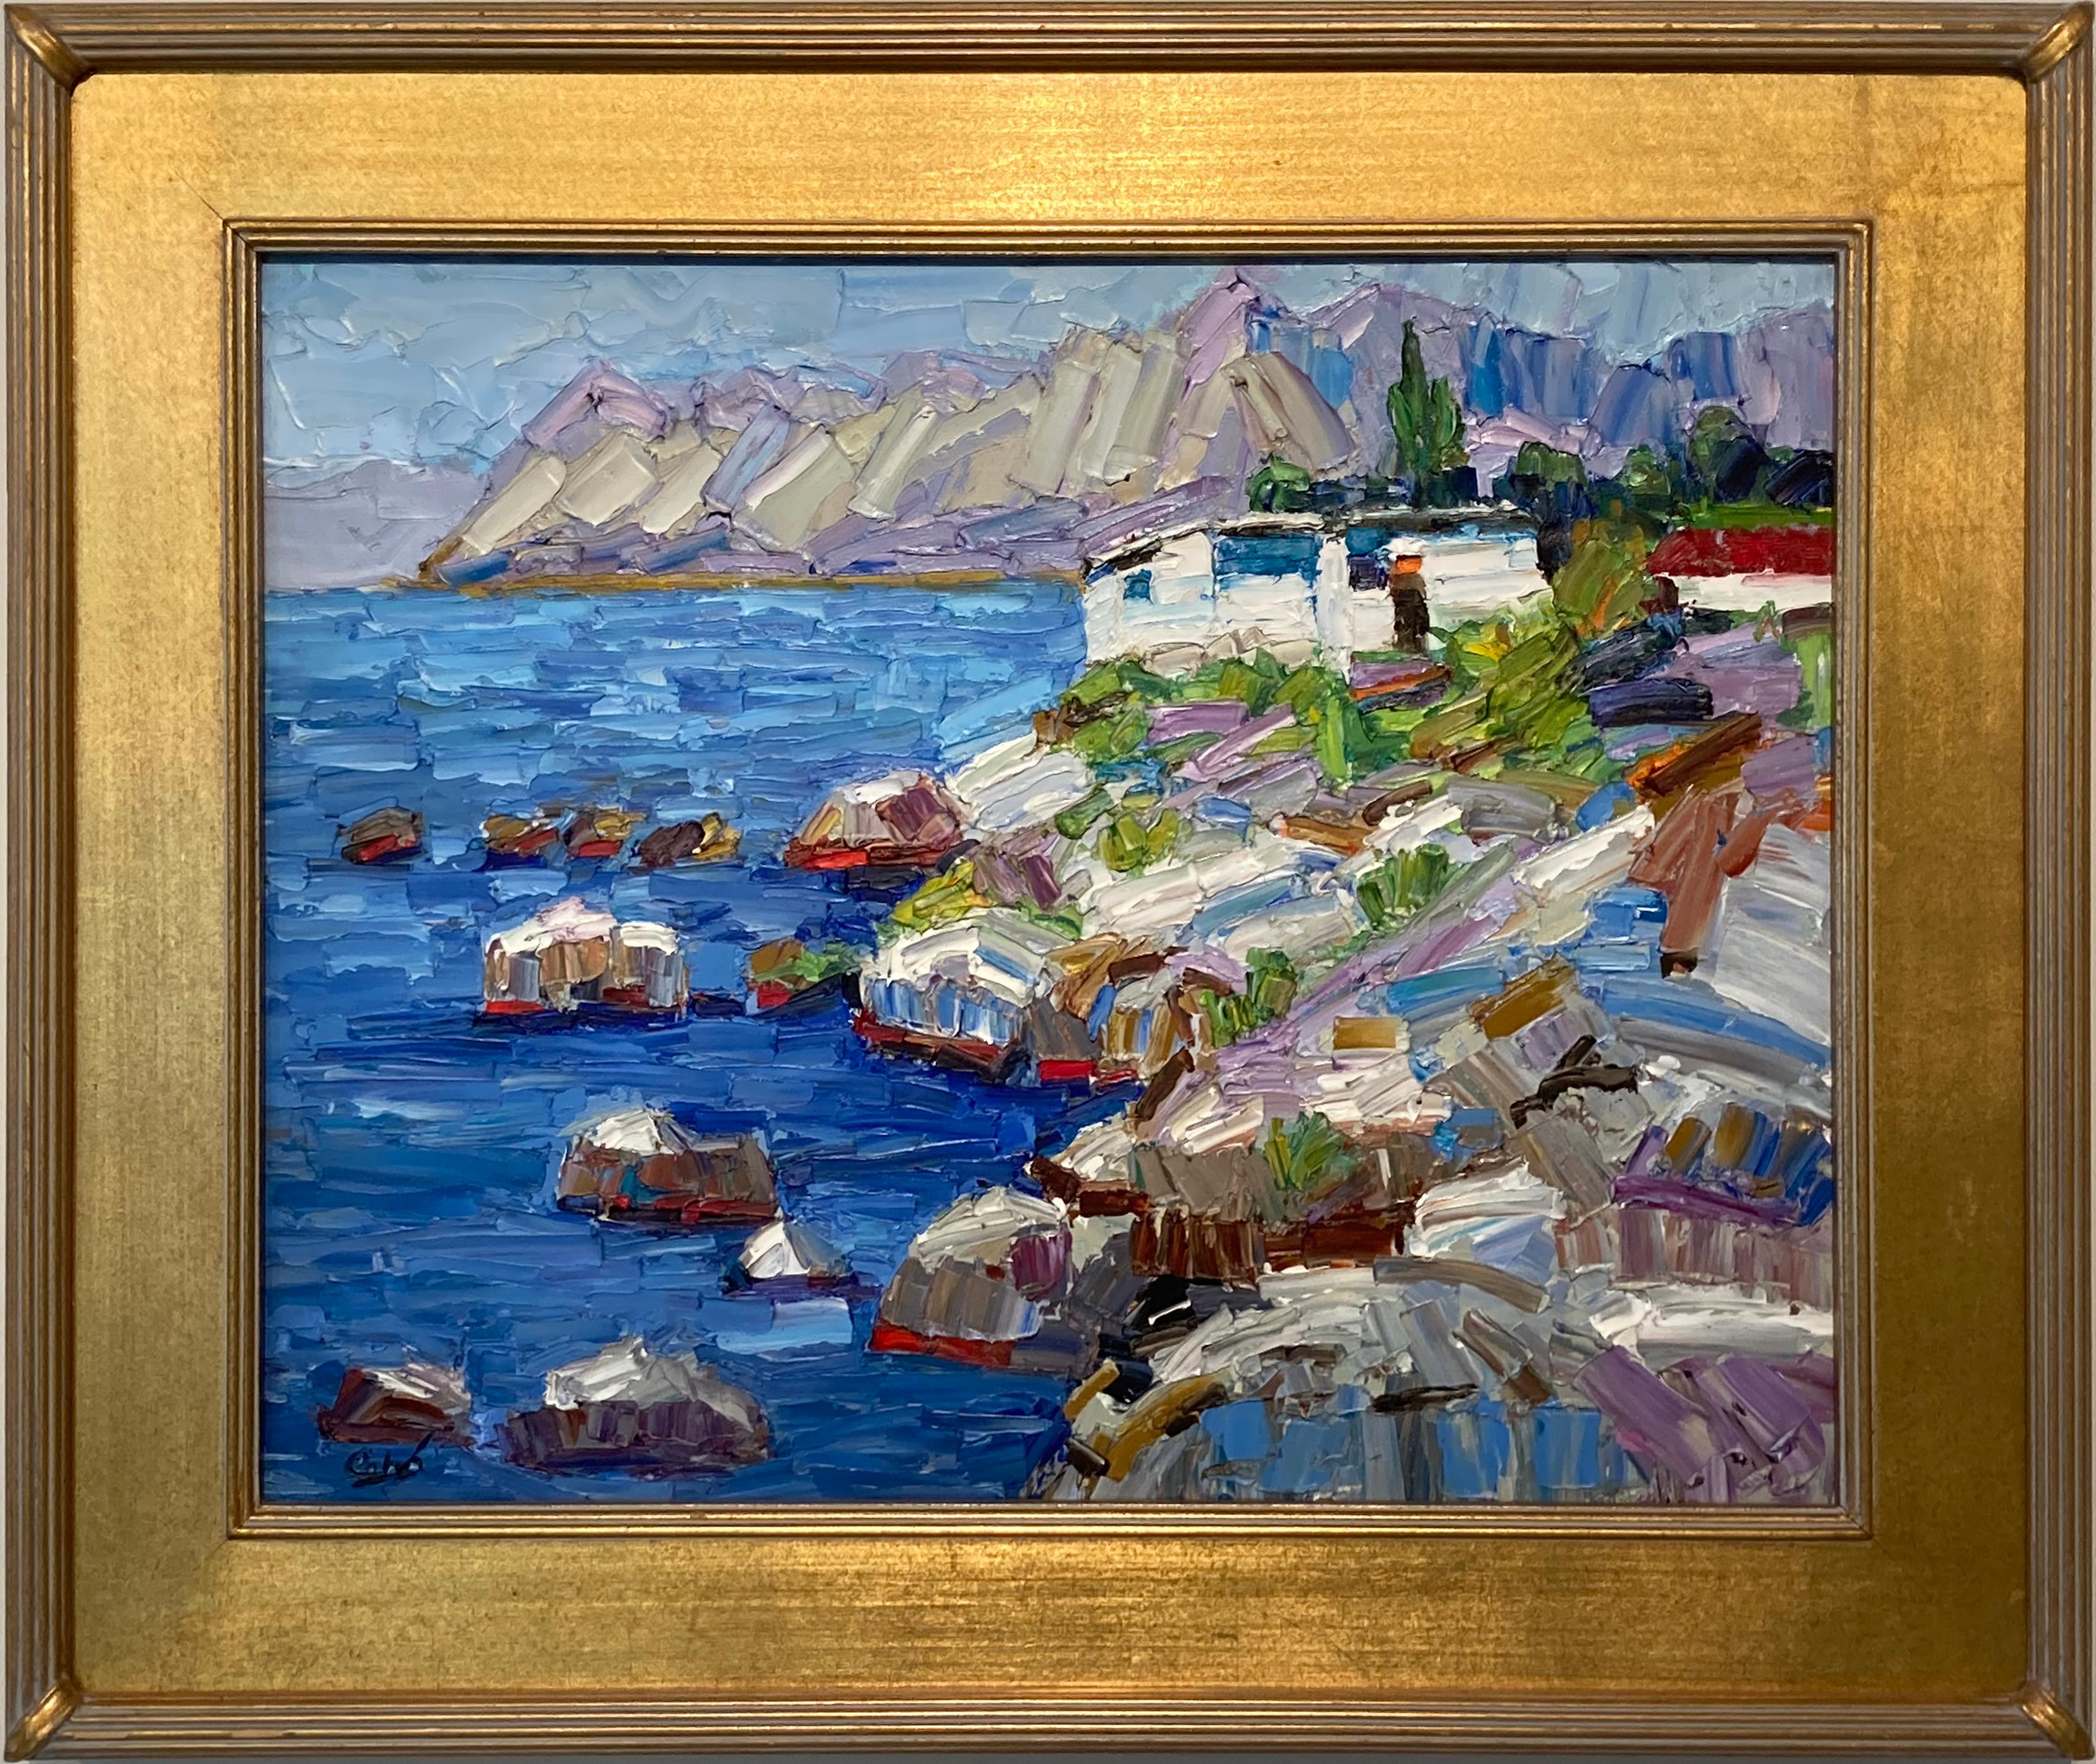 Landscape Painting Jim Cobb - Peinture à l'huile sur toile « Rocky Seascape Overlook » de James Cobb